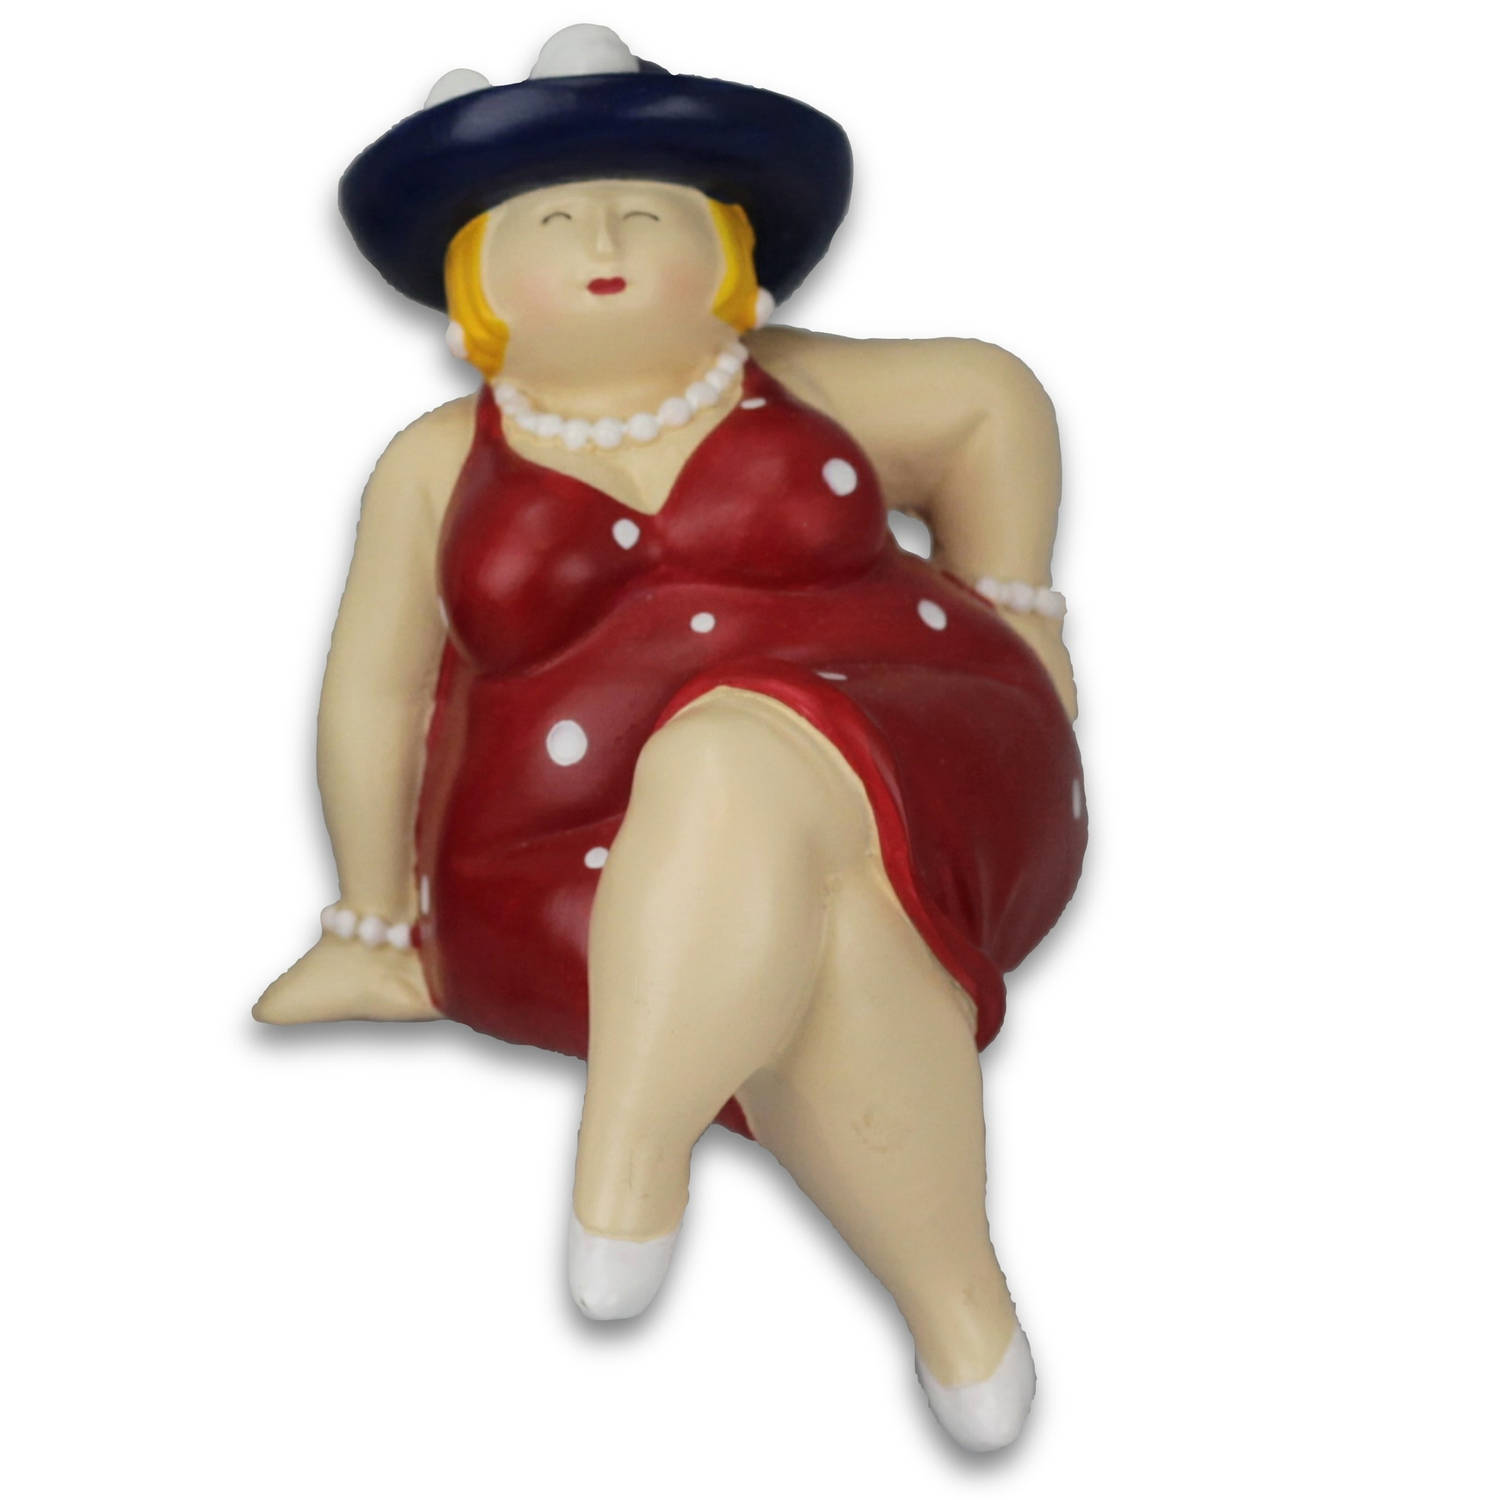 Inware Home decoratie beeldje dikke dame - zittend - jurk rood - 15 cm